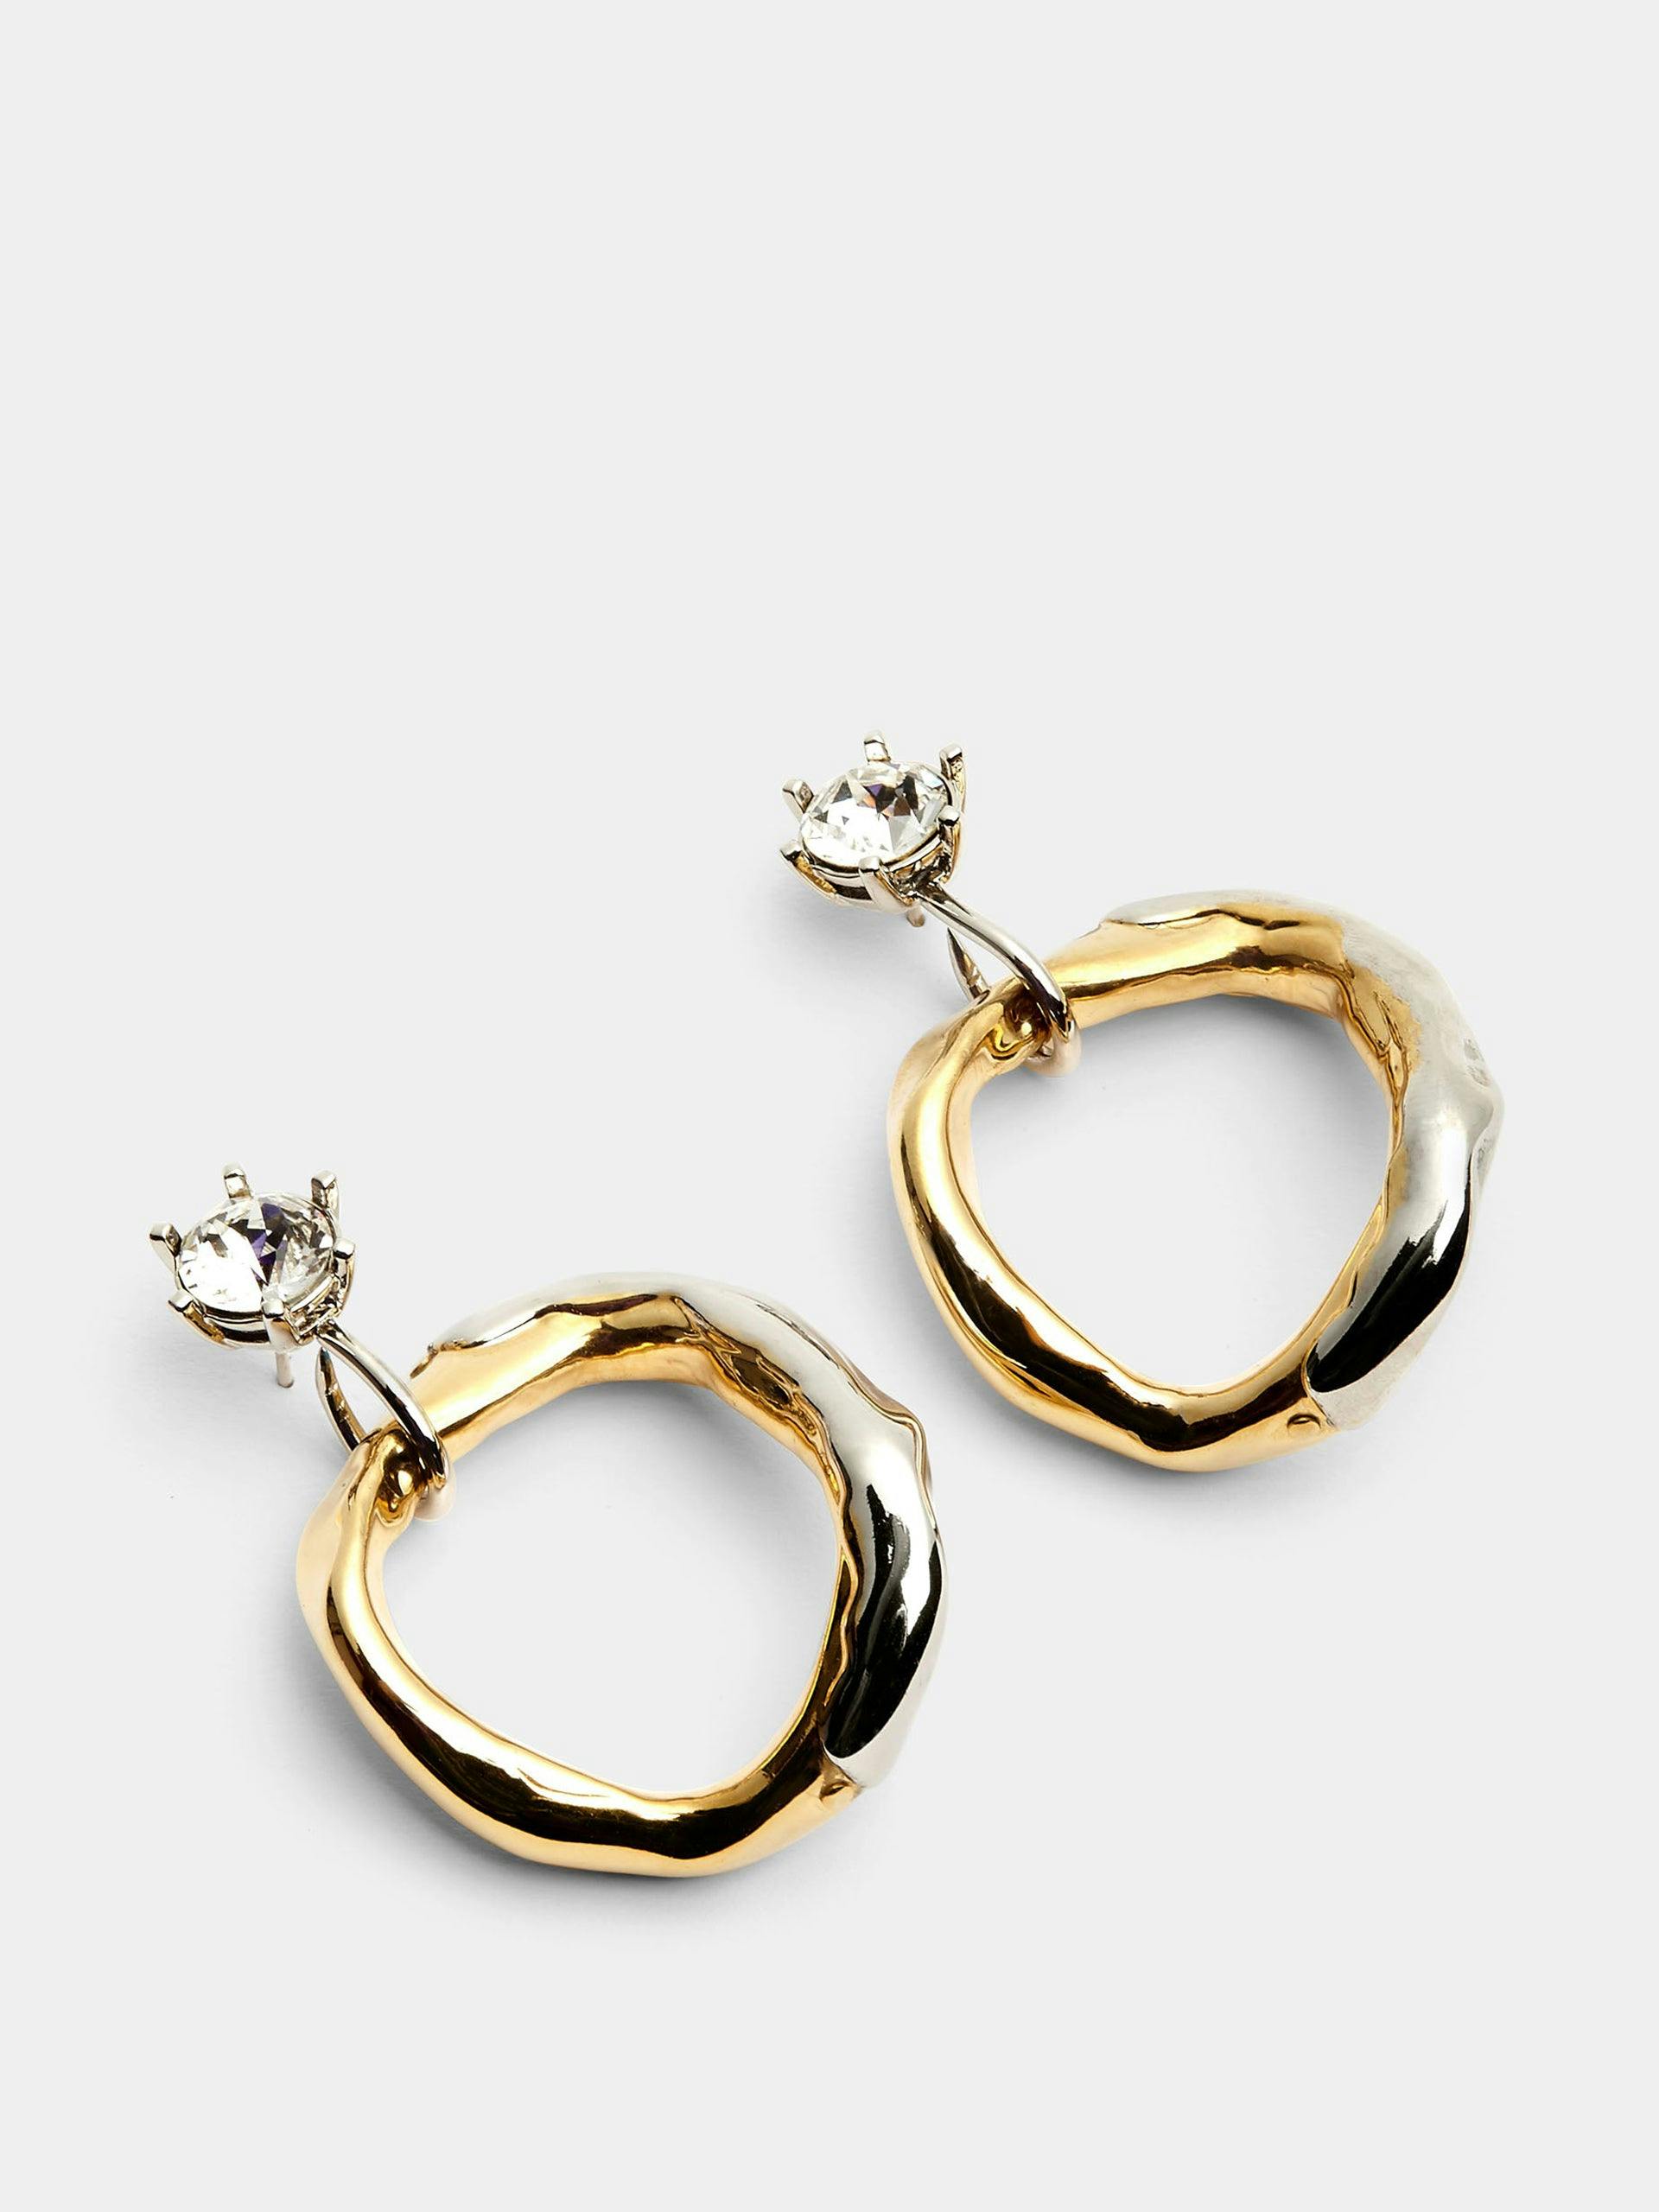 Calamari earrings